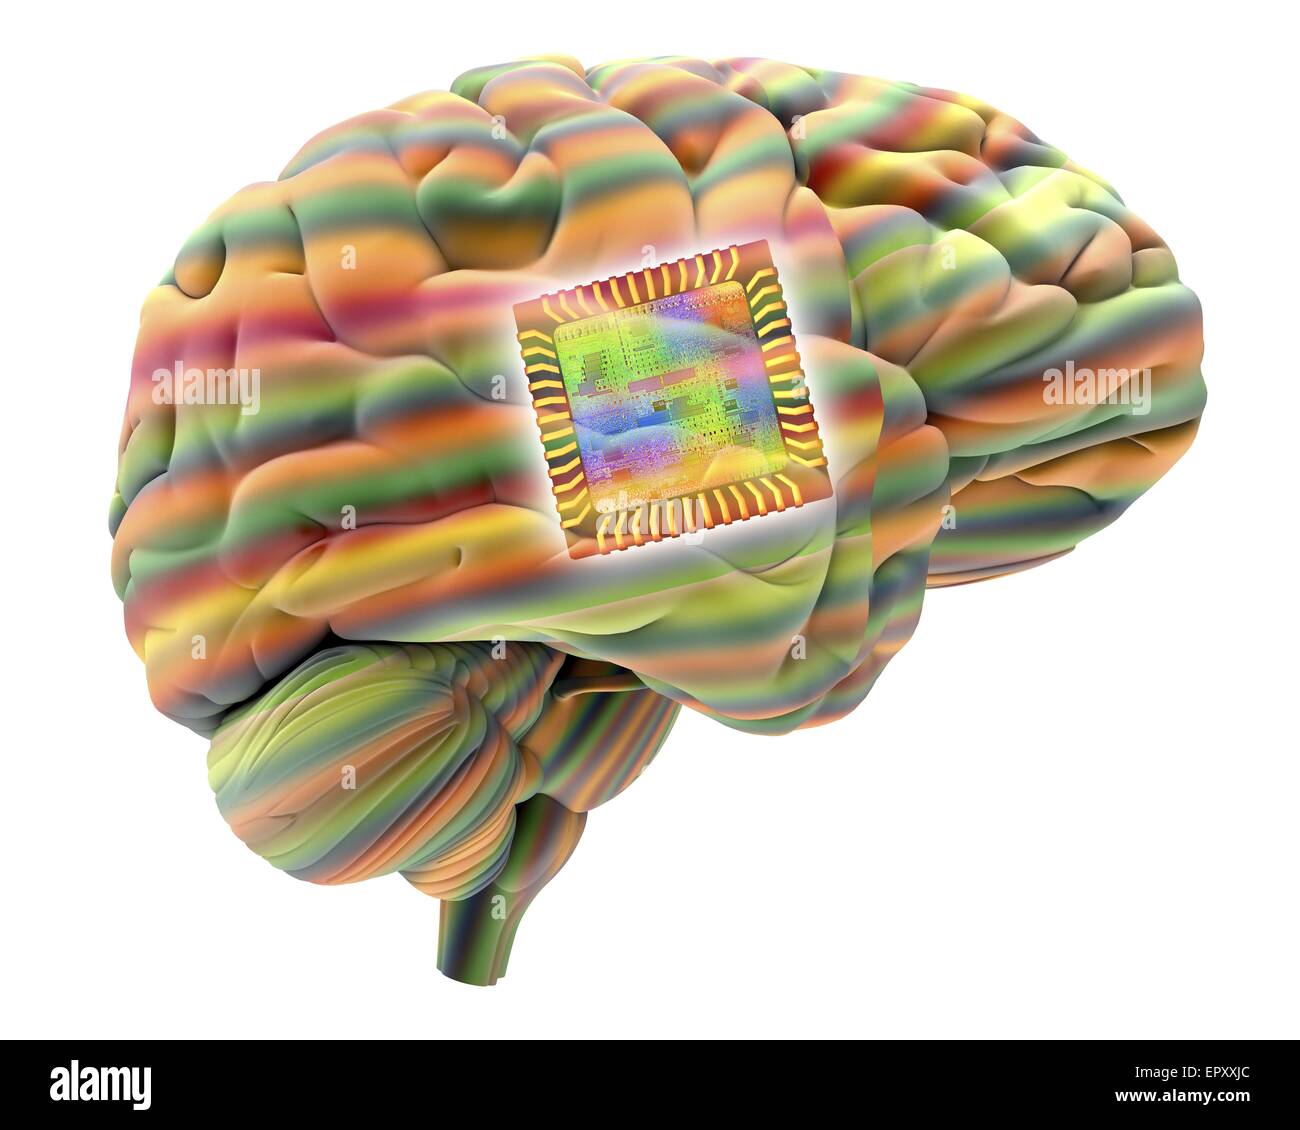 Künstliche Intelligenz und Kybernetik, Konzeptbild. Dieses Bild von einem Computerchip, überlagert ein menschliches Gehirn, kann Konzepte wie Kybernetik, Gehirn-Implantate, Robotik und künstliche Intelligenz darstellen. Hier ist die Chip-Struktur repräsentiert Stockfoto